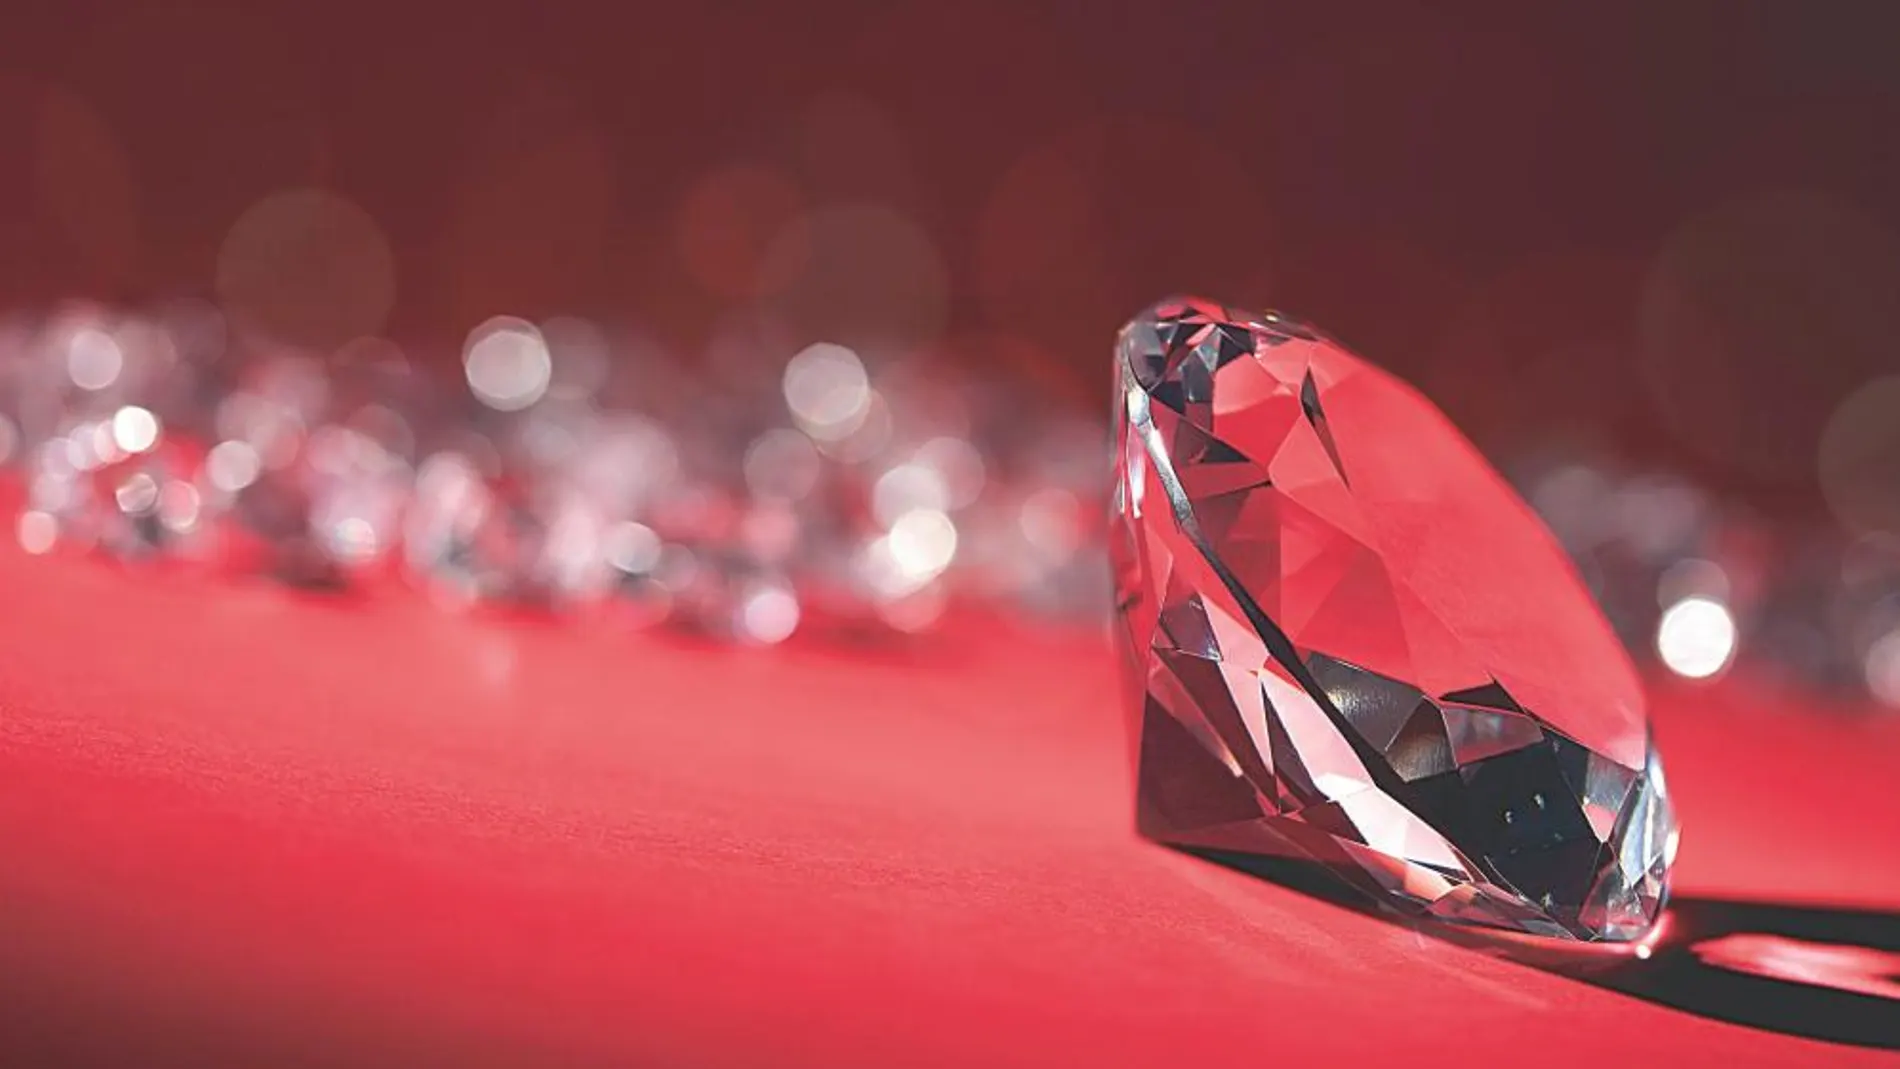 El diamante sintético se produce o bien sometiendo el carbono (esta gema es fundamentalmente carbono que se puede extraer hasta de la punta de los lápices) a alta presión y alta temperatura o por deposición química